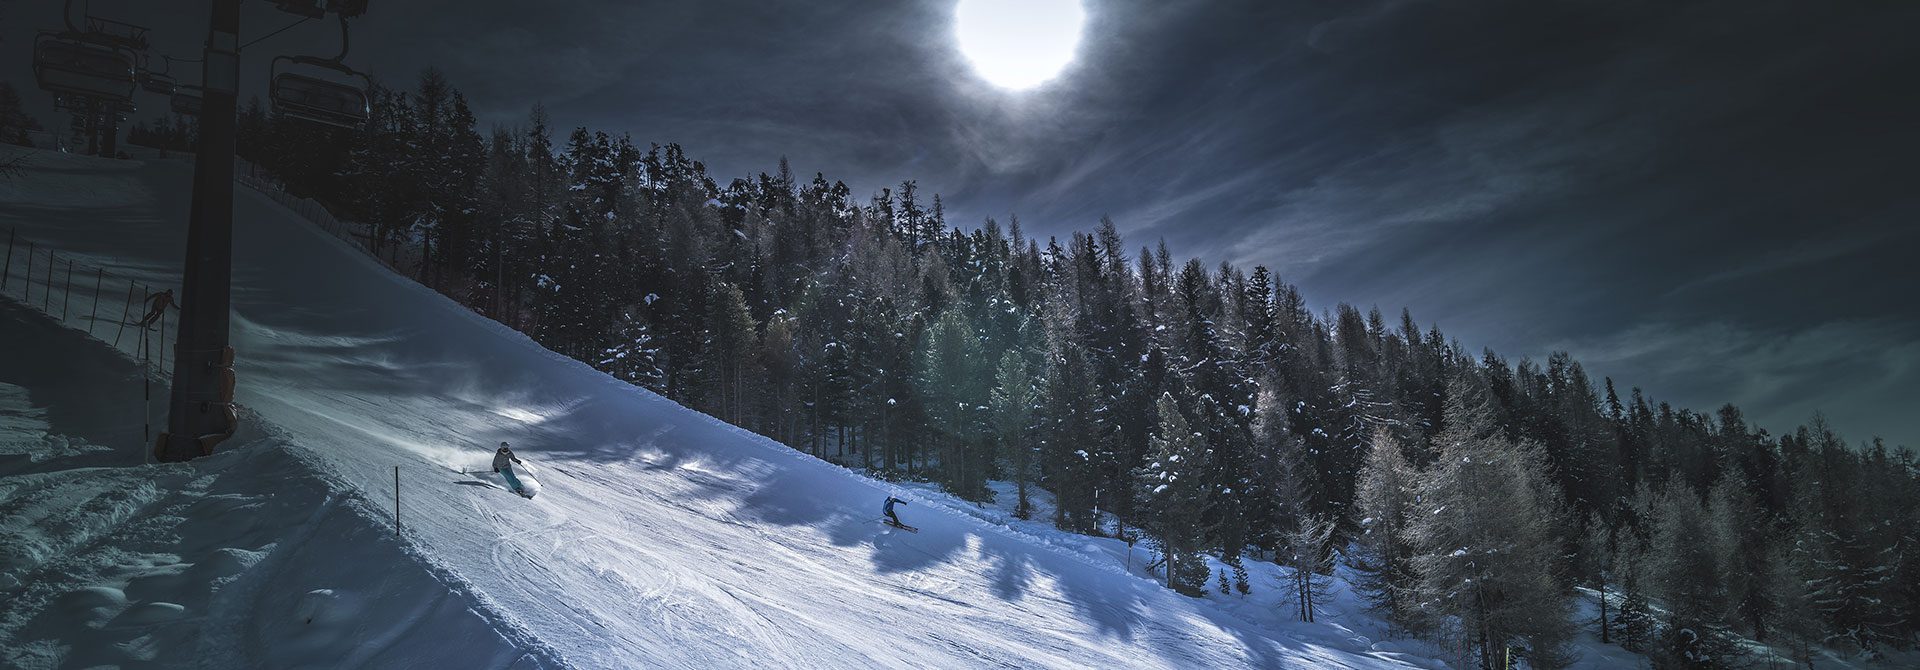 aprica-night-ski-1.jpg